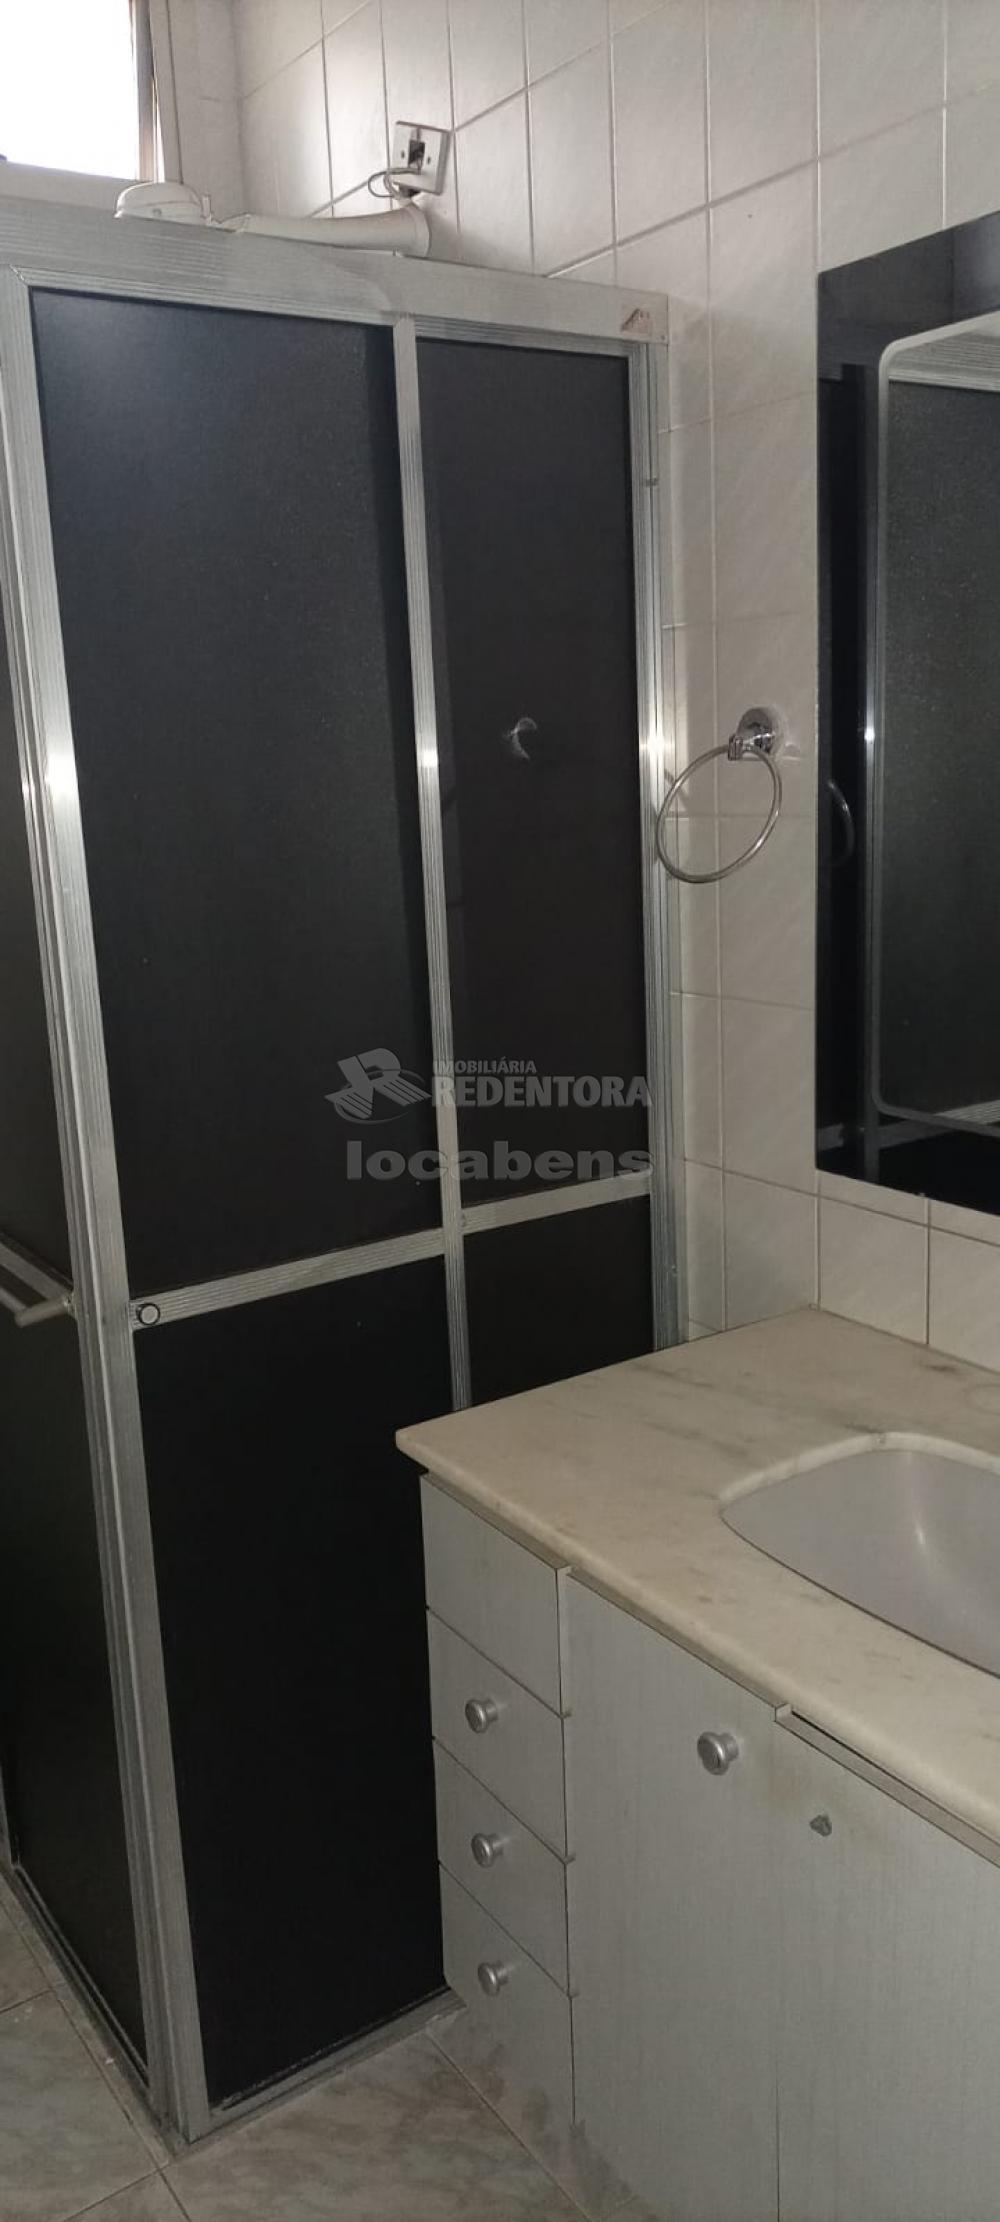 Comprar Apartamento / Padrão em São José do Rio Preto apenas R$ 450.000,00 - Foto 22